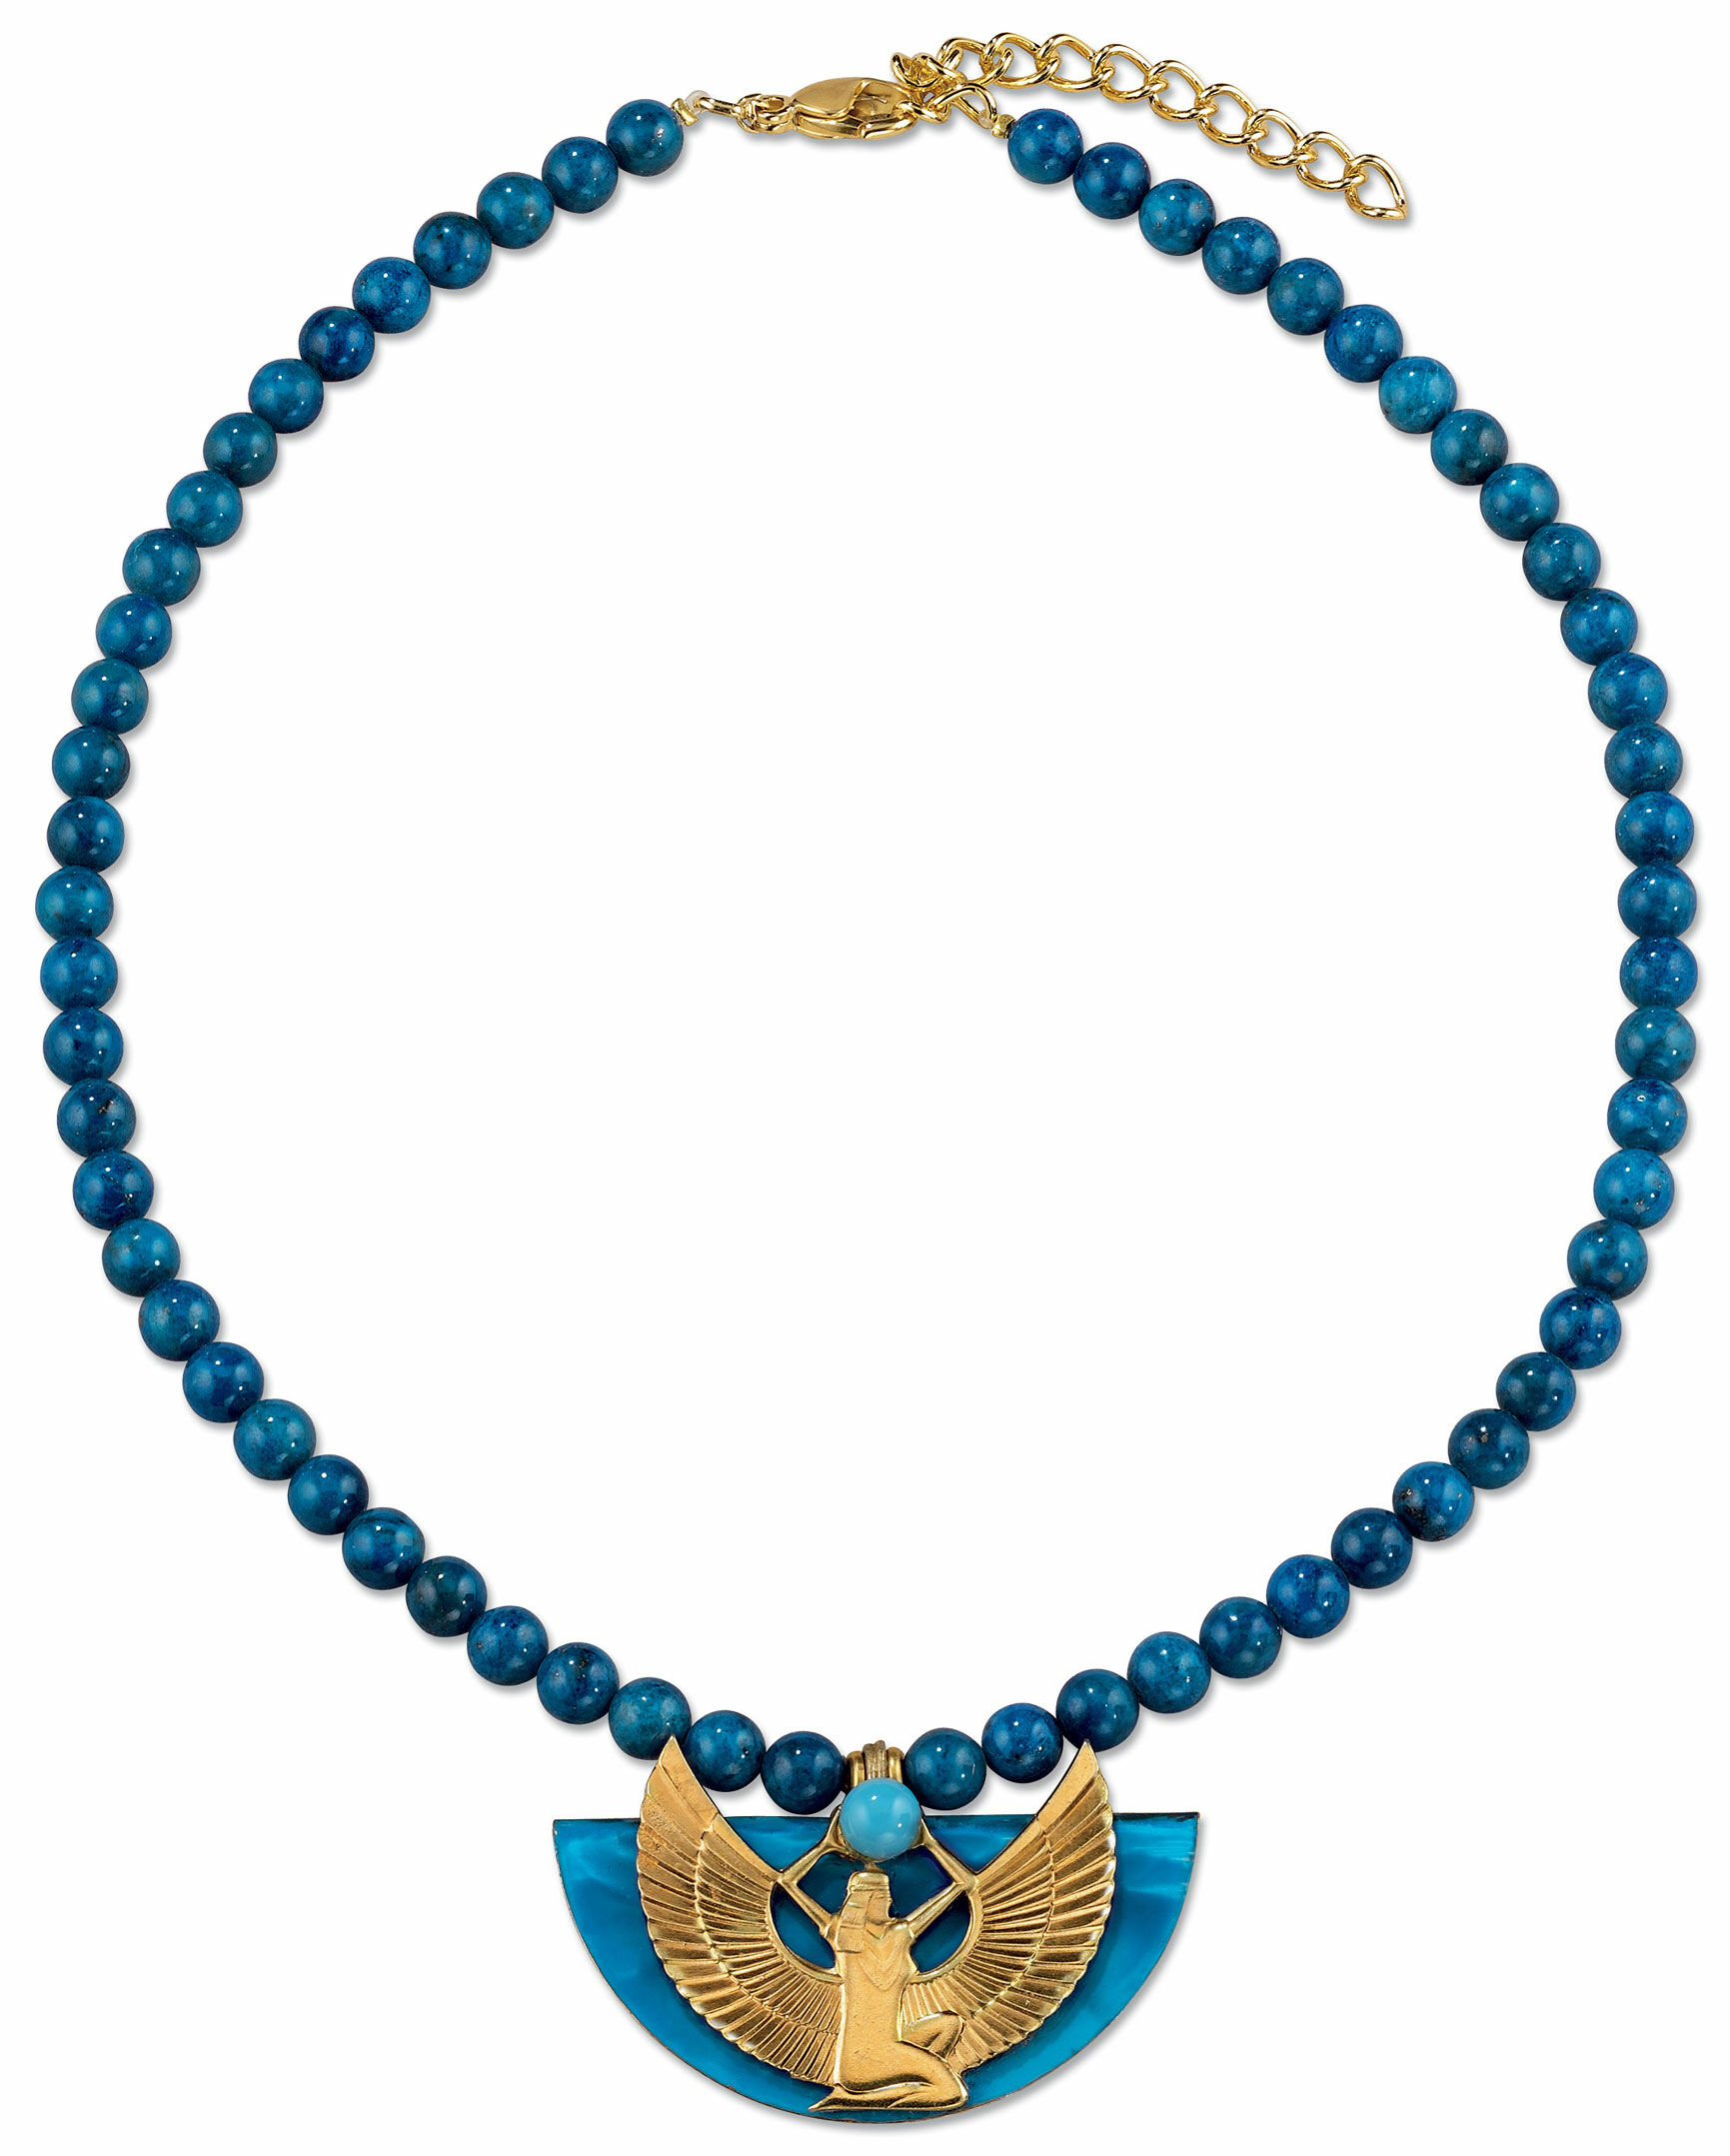 Collier "Isisschwinge" mit blauen Lapislazuli-Perlen von Petra Waszak